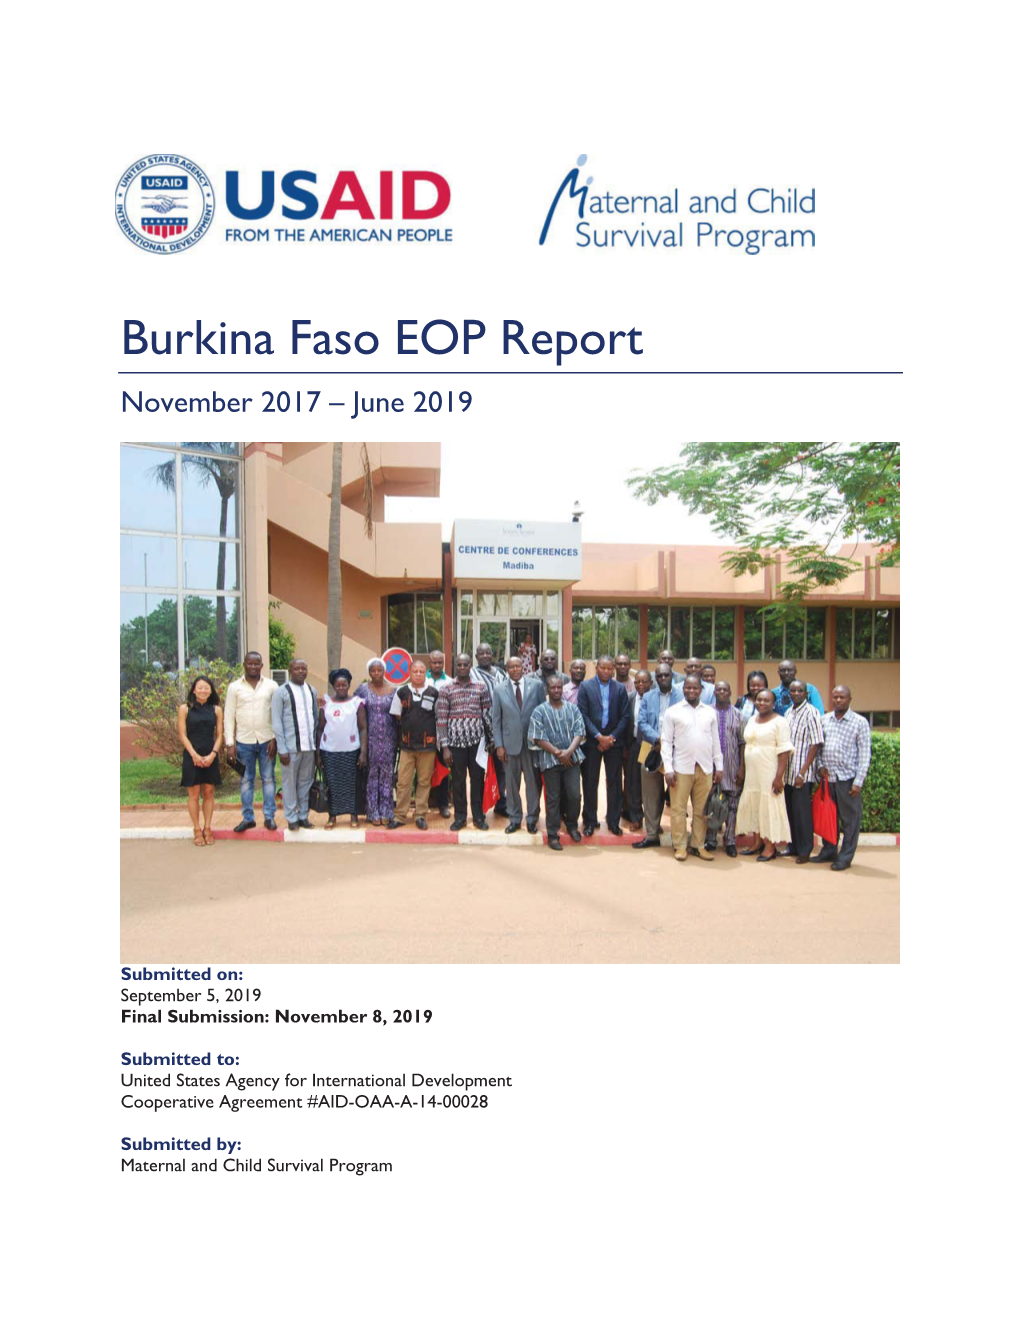 Burkina Faso EOP Report November 2017 – June 2019